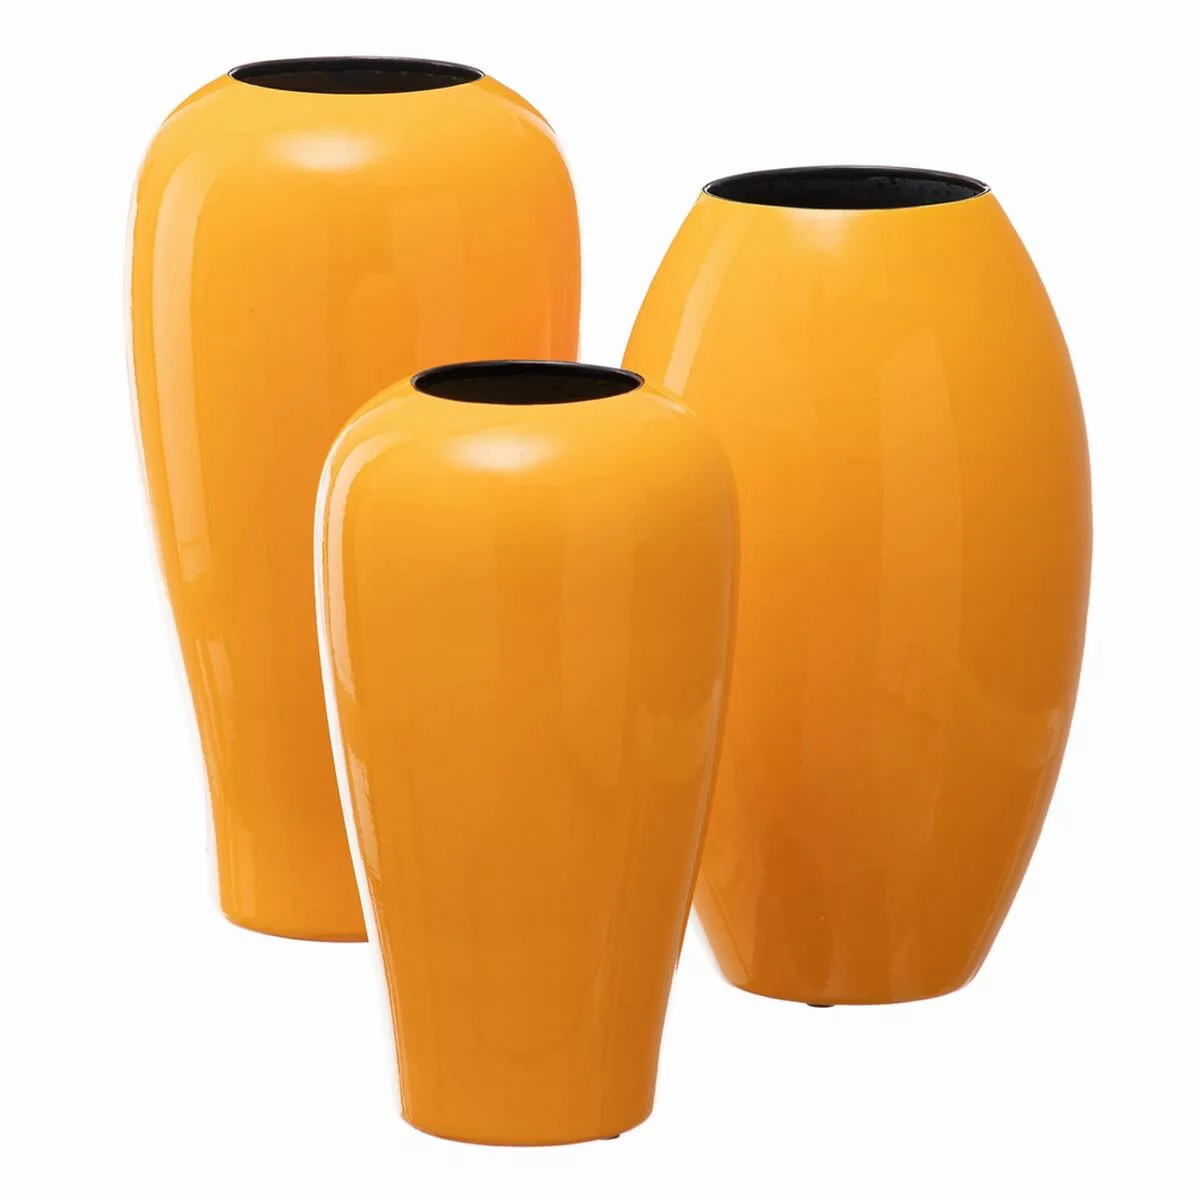 Vase 21,5 X 21,5 X 41 Cm Aus Keramik Gelb günstig online kaufen